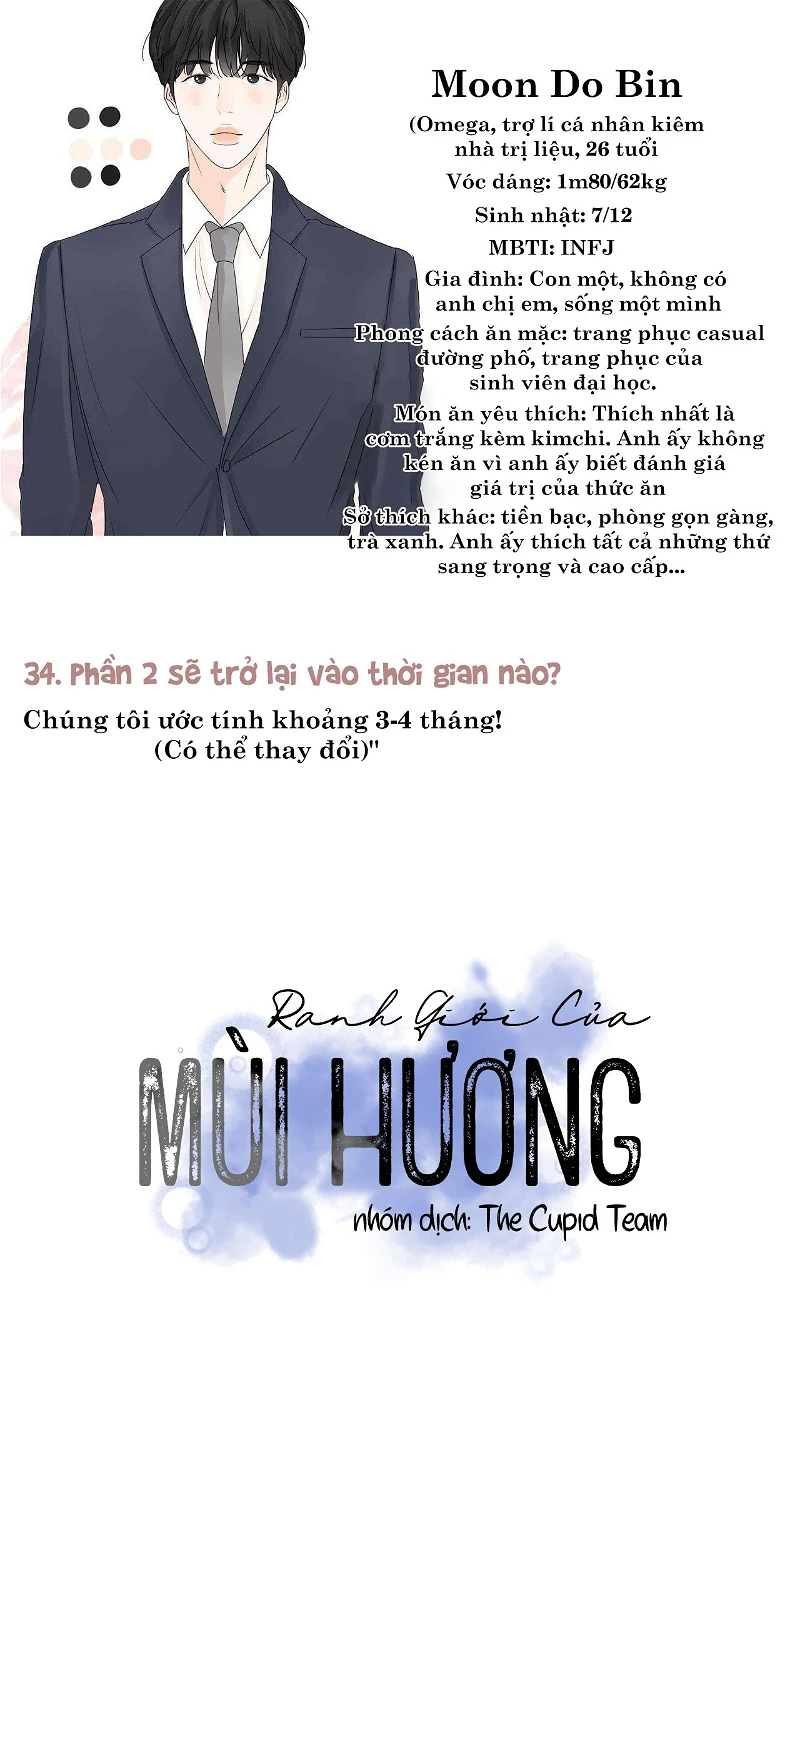 ranh-gioi-cua-huong-thom-chap-31-4